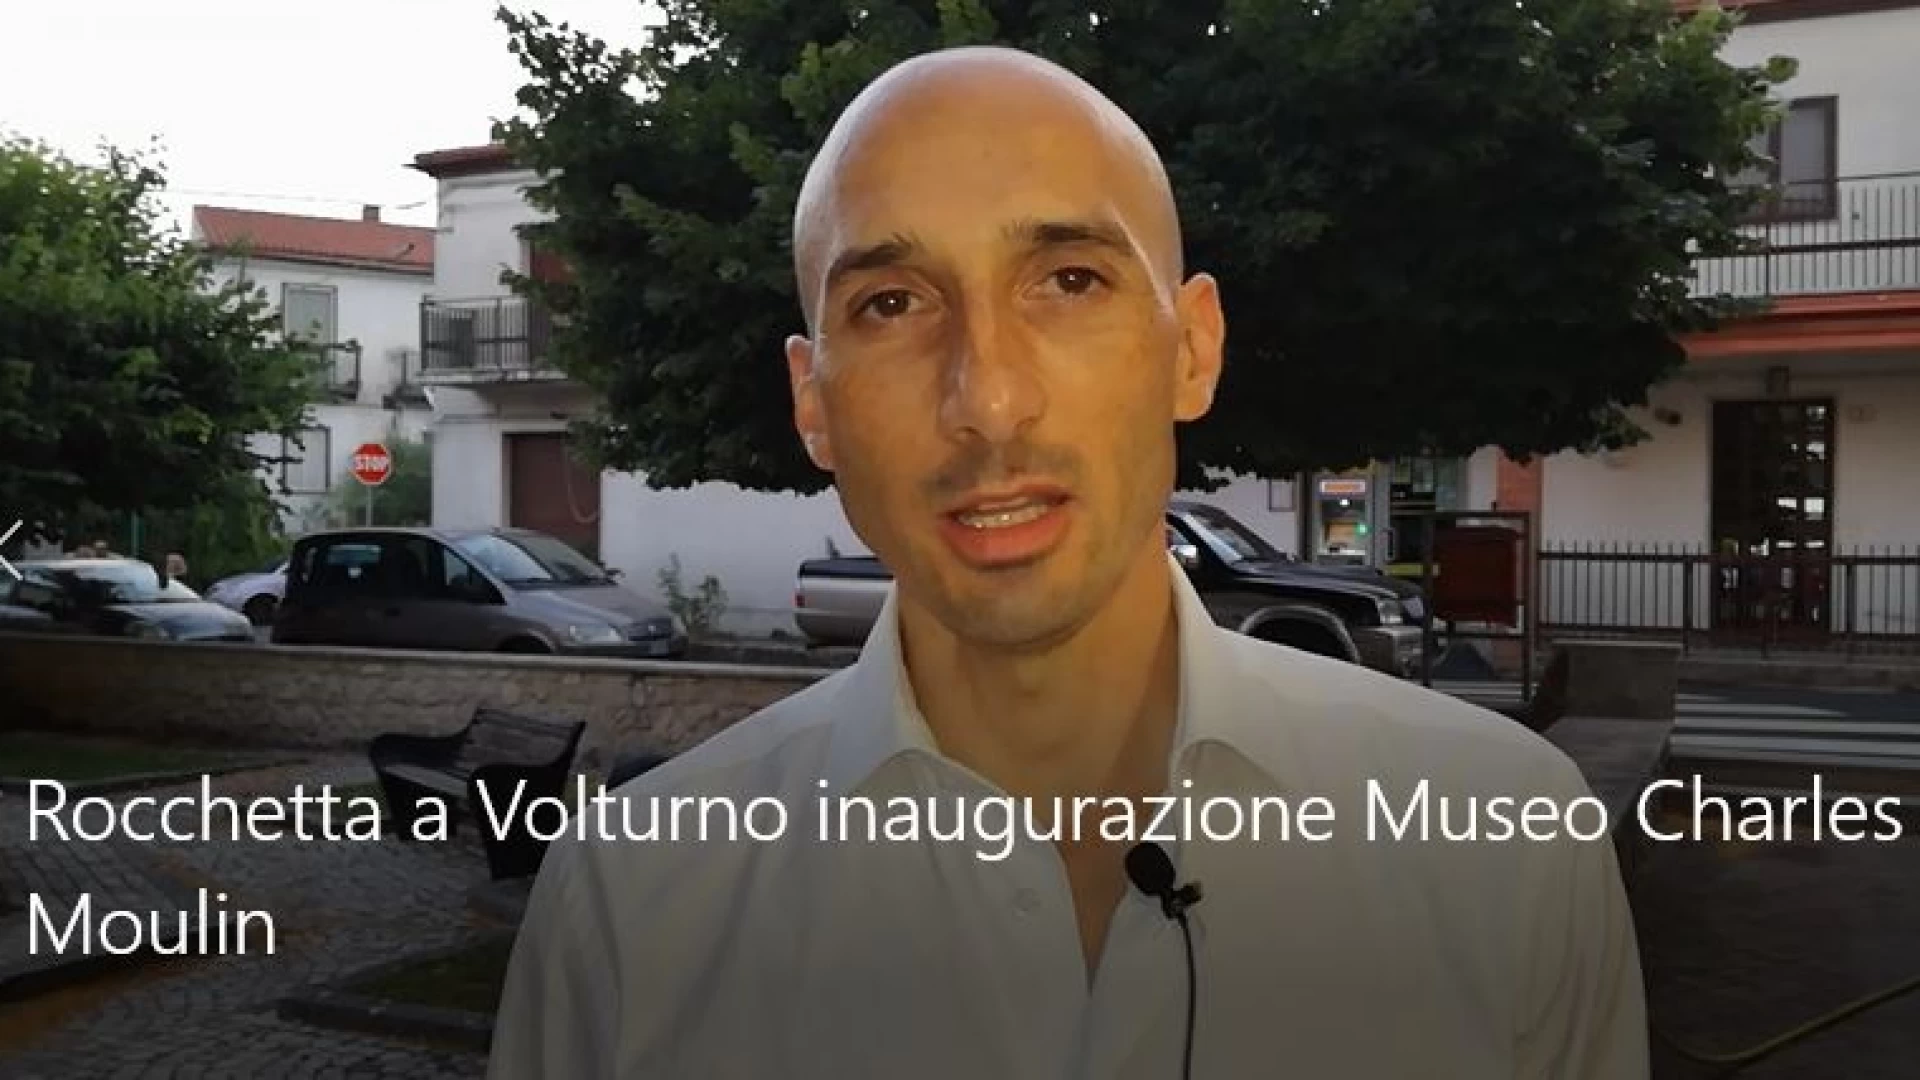 Rocchetta a Volturno: domenica 18 agosto l’inaugurazione ed apertura ufficiale del Museo dedicato a Charles Moulin. Guarda il servizio video